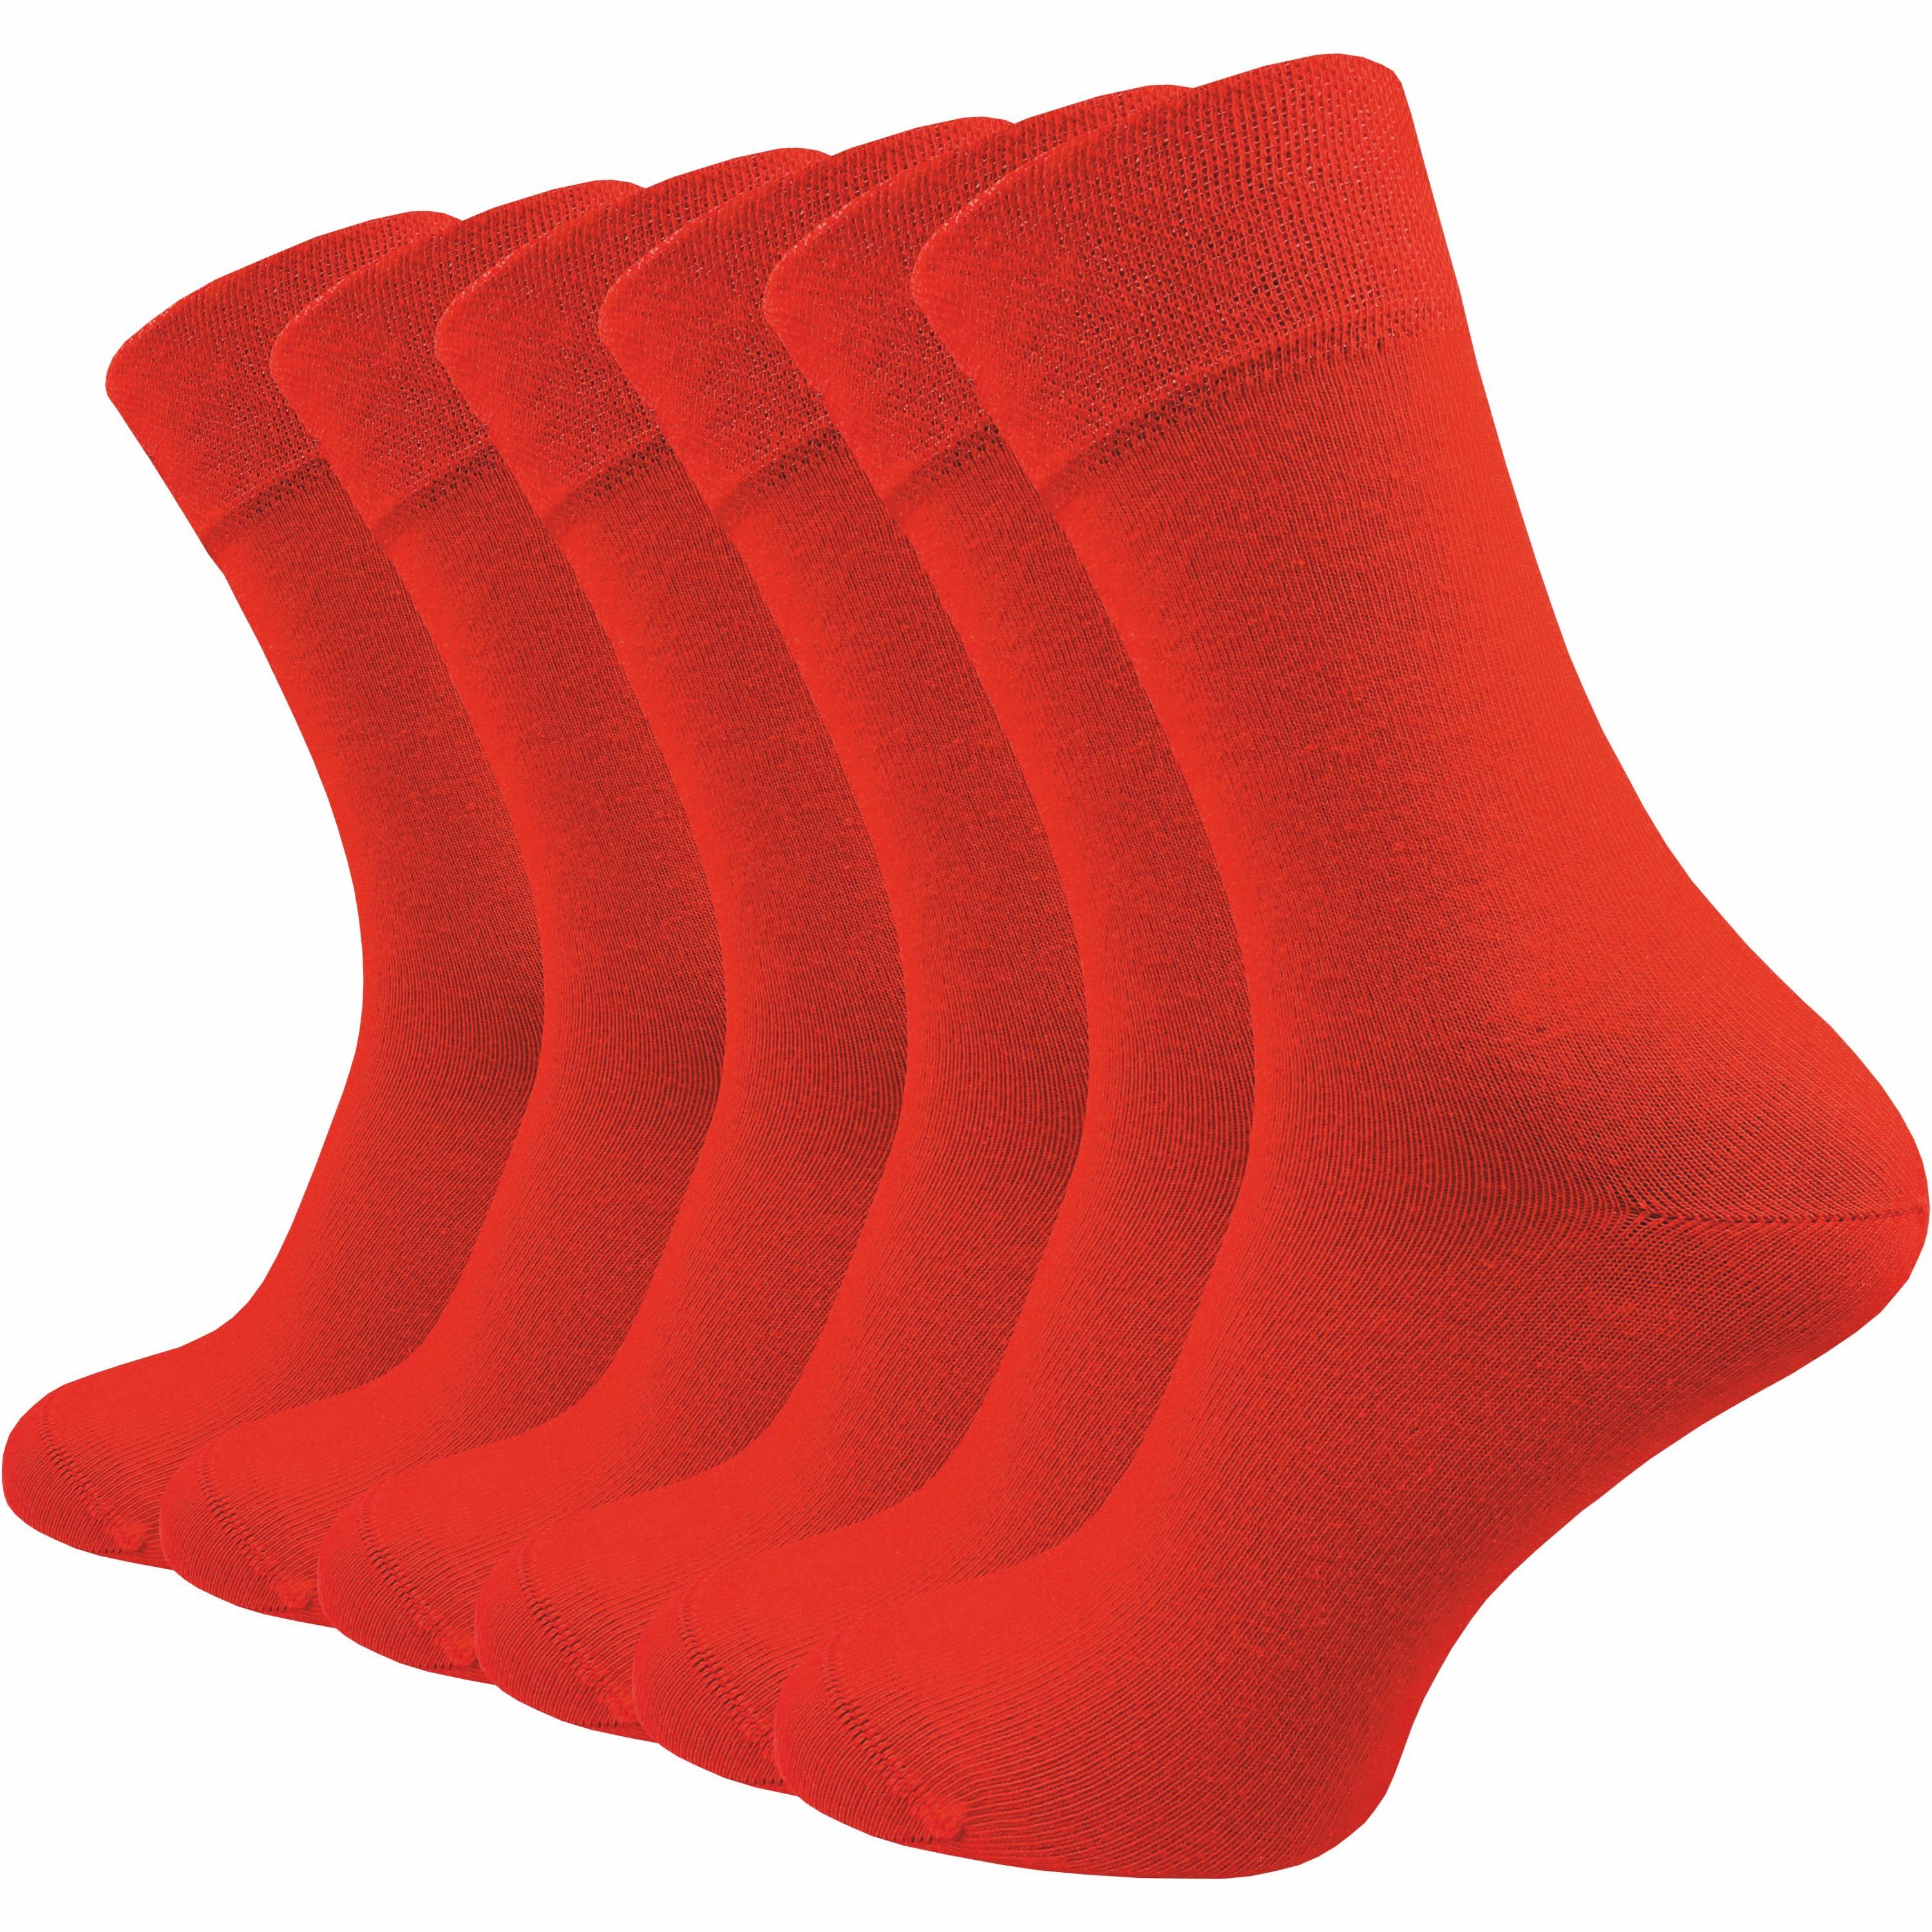 GAWILO Socken für Damen & Herren - Premium Komfortbund ohne drückende Naht (6 Paar) schwarz, grau & blau - aus hochwertiger, doppelt gekämmter Baumwolle rot